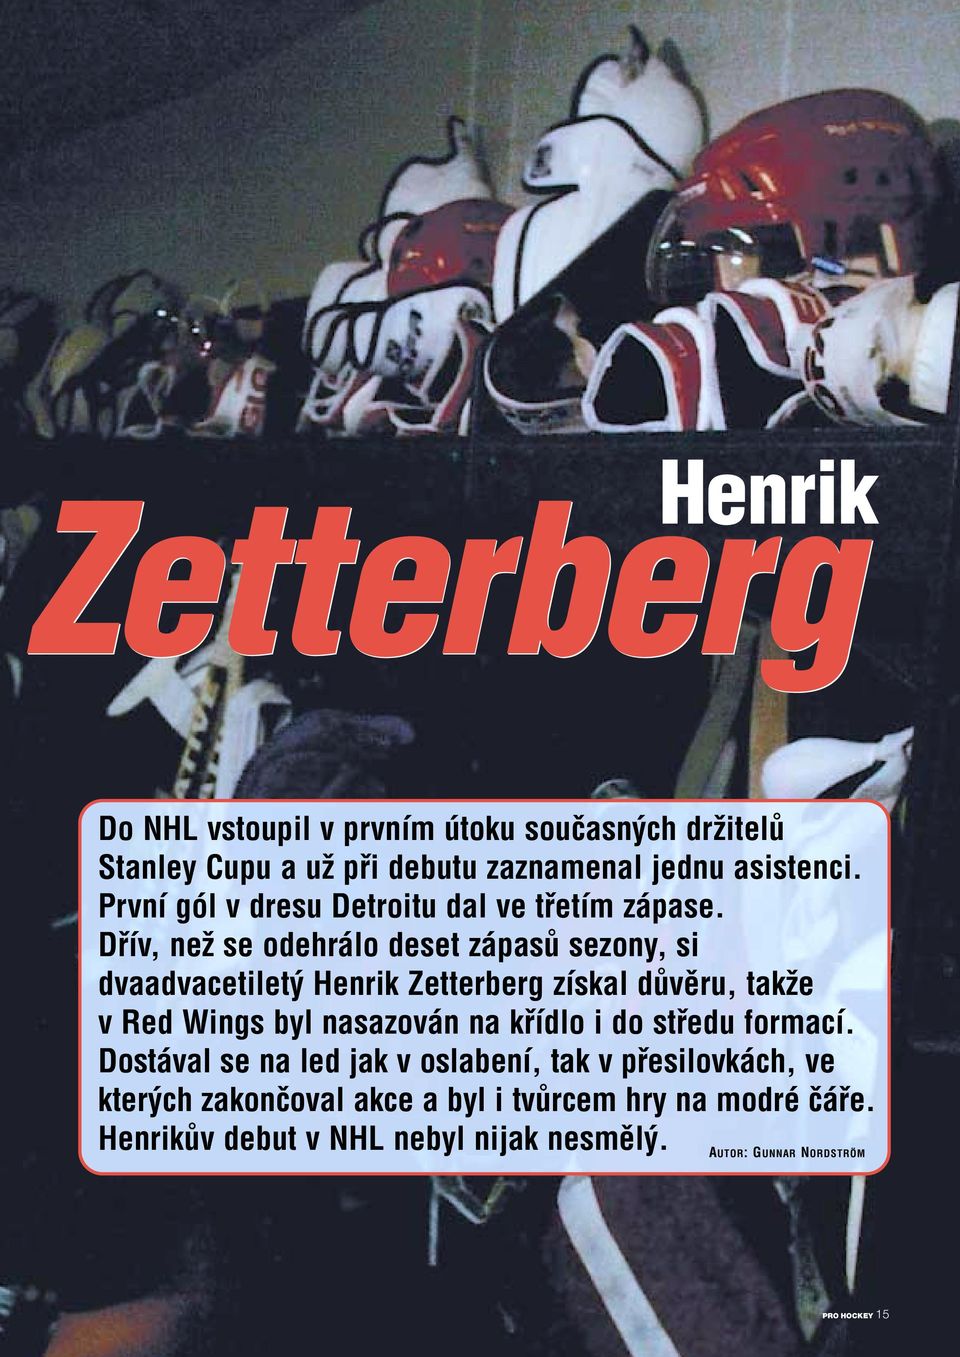 Dfiív, neï se odehrálo deset zápasû sezony, si dvaadvacetilet Henrik Zetterberg získal dûvûru, takïe v Red Wings byl nasazován na